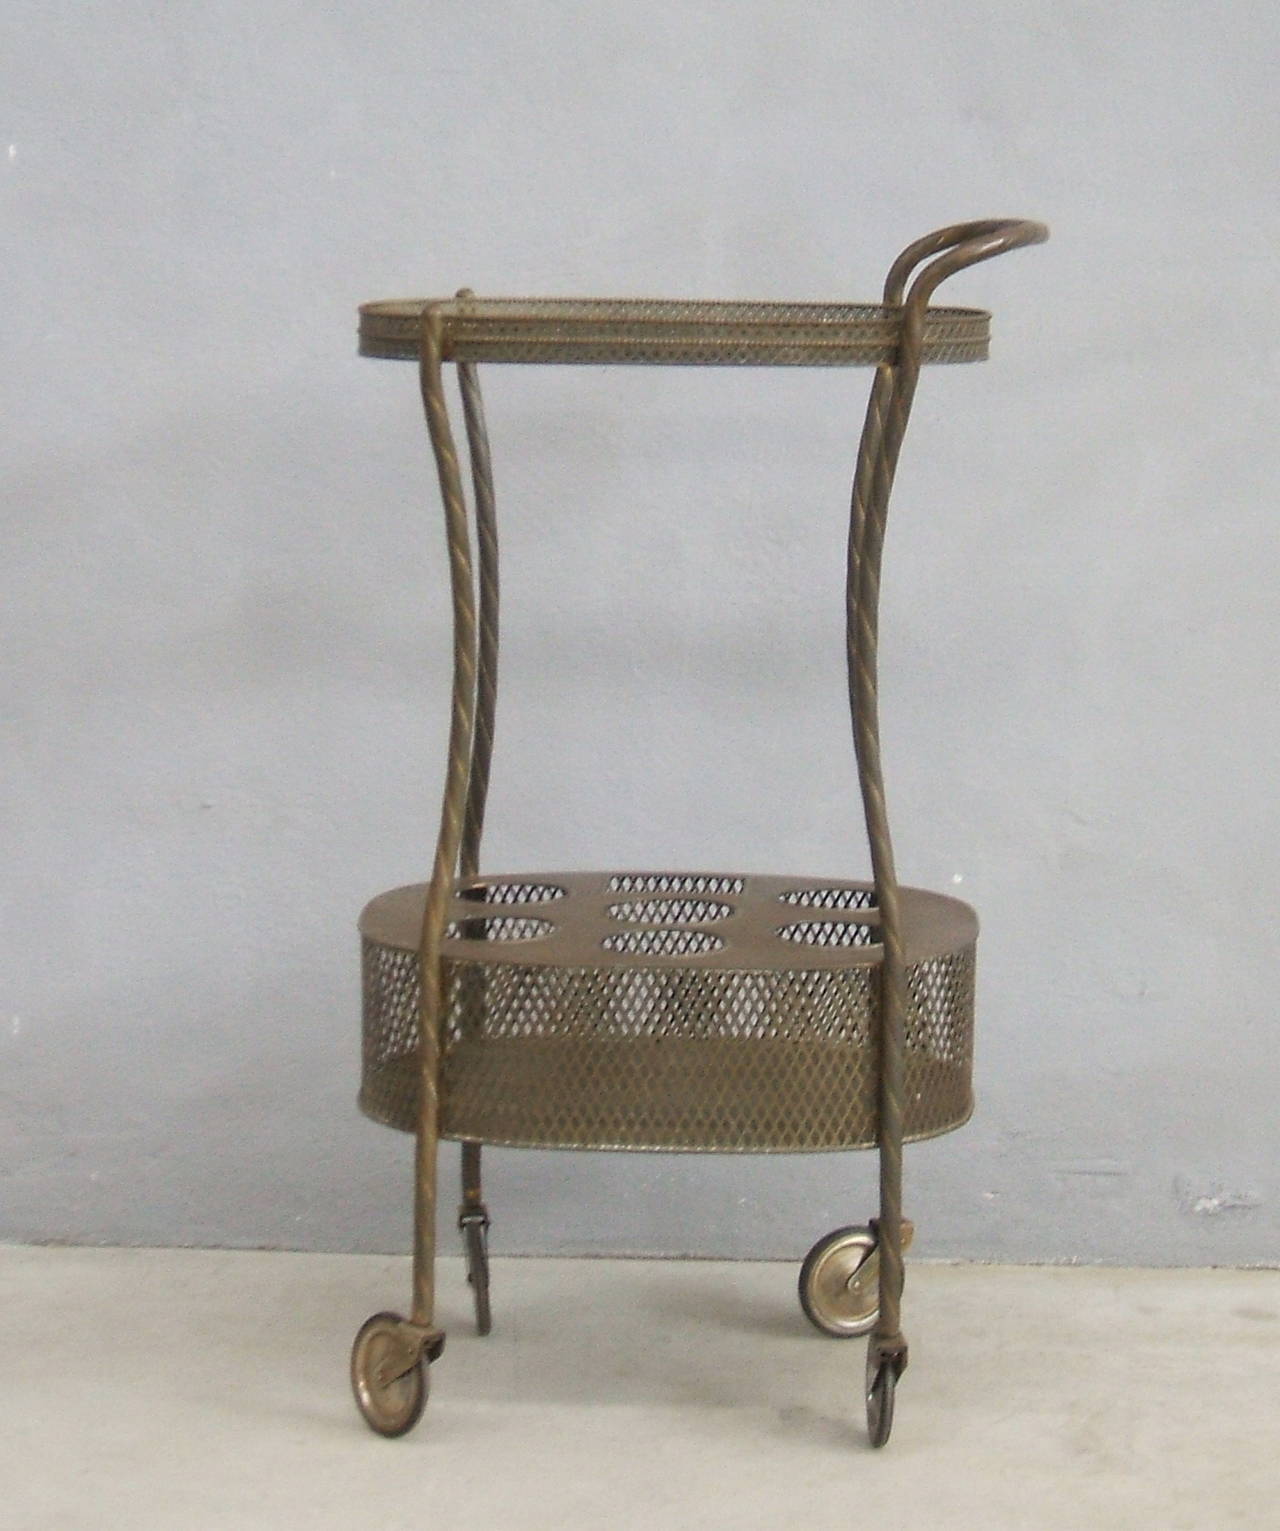 Unusual brass bar cart in original patina.